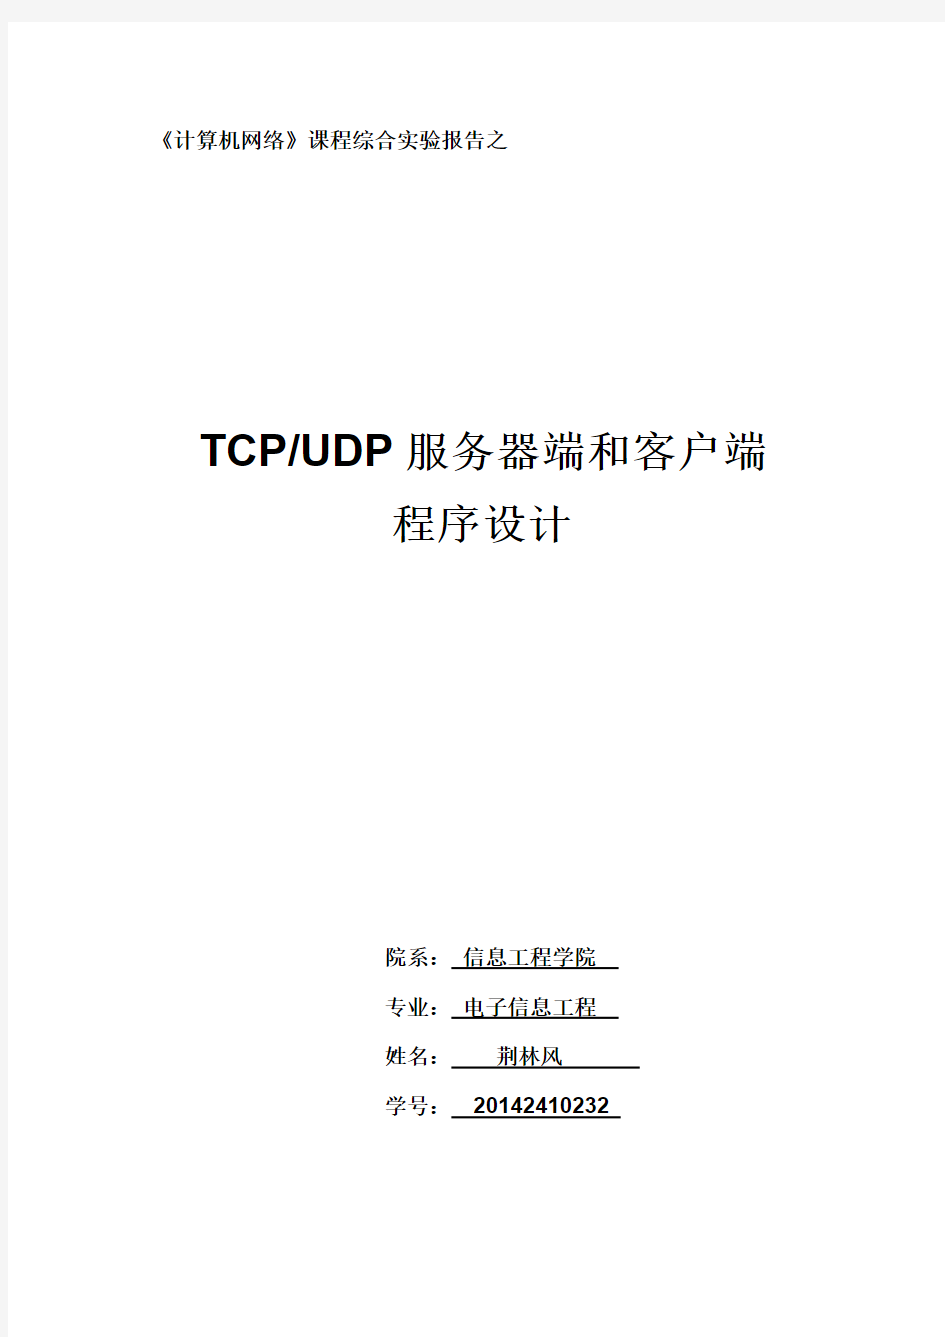 TCPUDP客户服务器实验报告